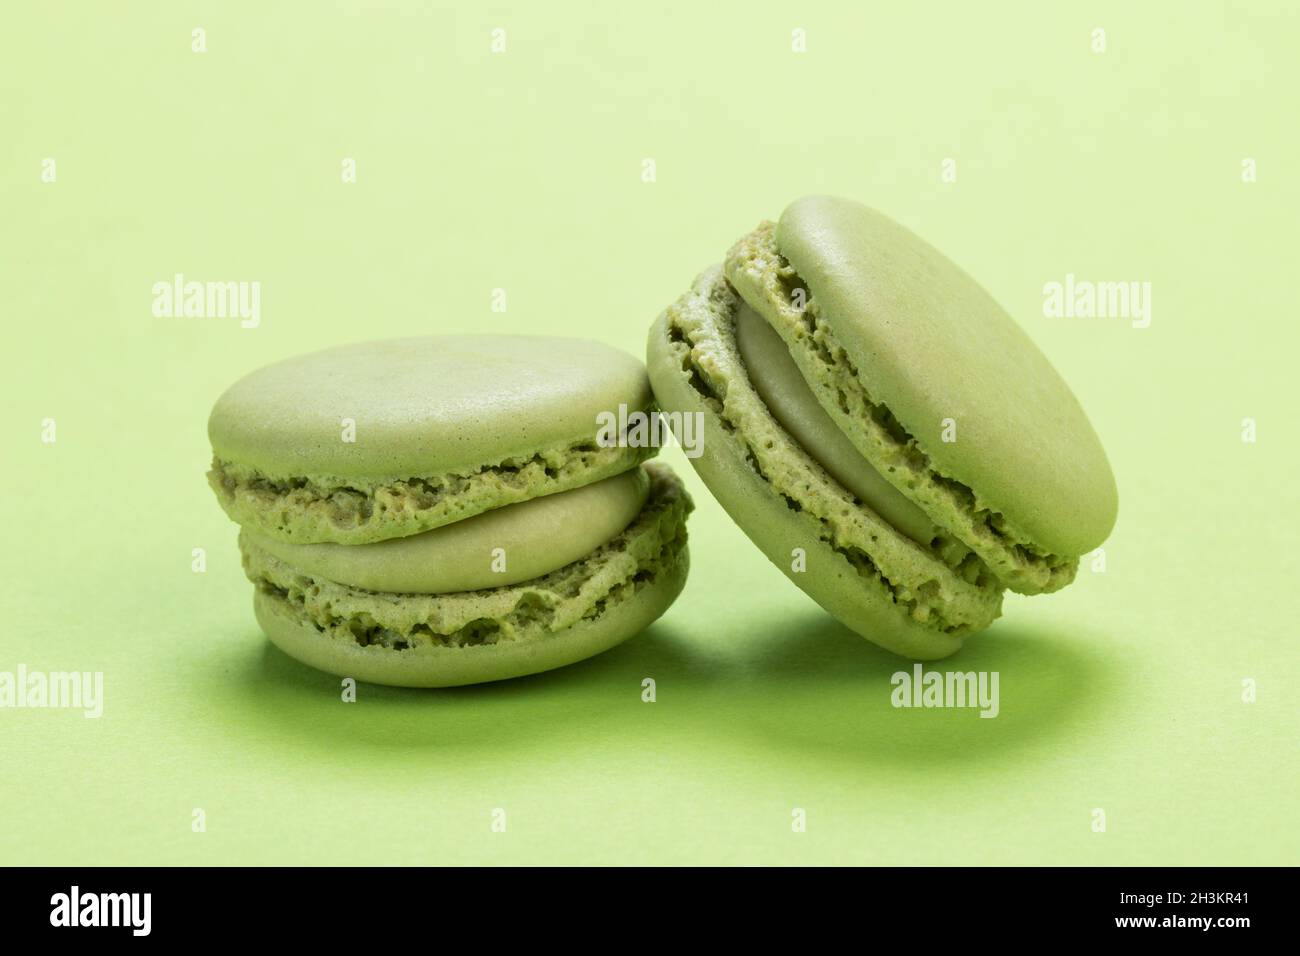 Biscuits de macaron français au goût de pistache sur fond de même couleur vert pastel Banque D'Images